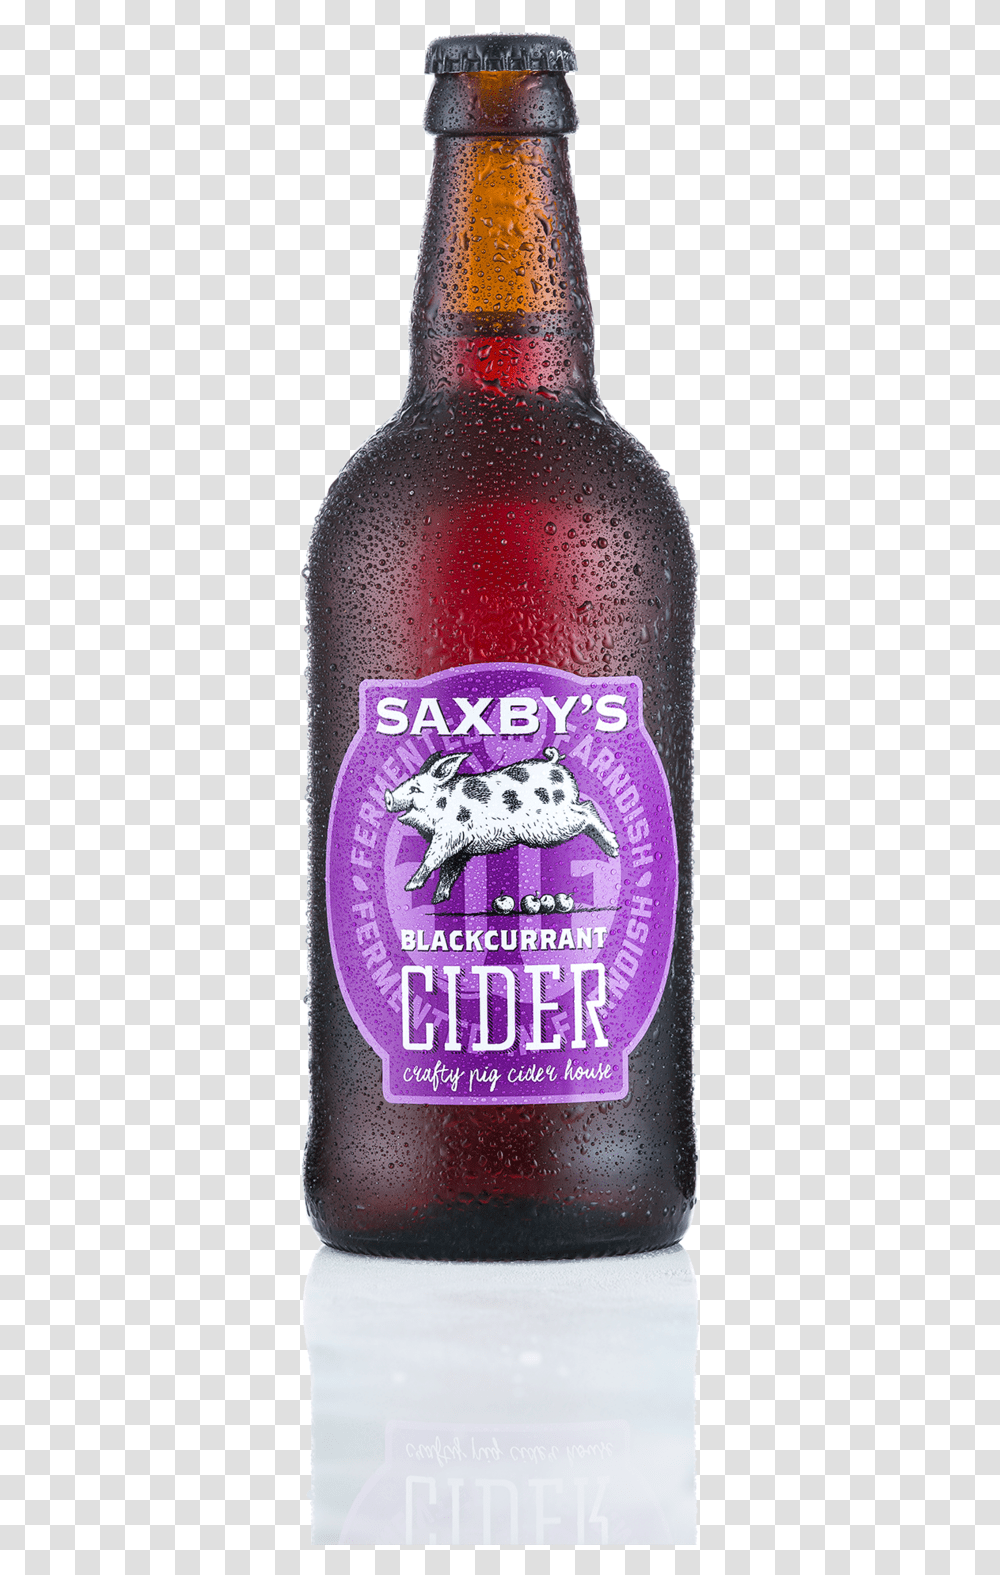 Saxbys Cider Blackcurrant Bottle Glass Bottle, Beer, Alcohol, Beverage, Label Transparent Png